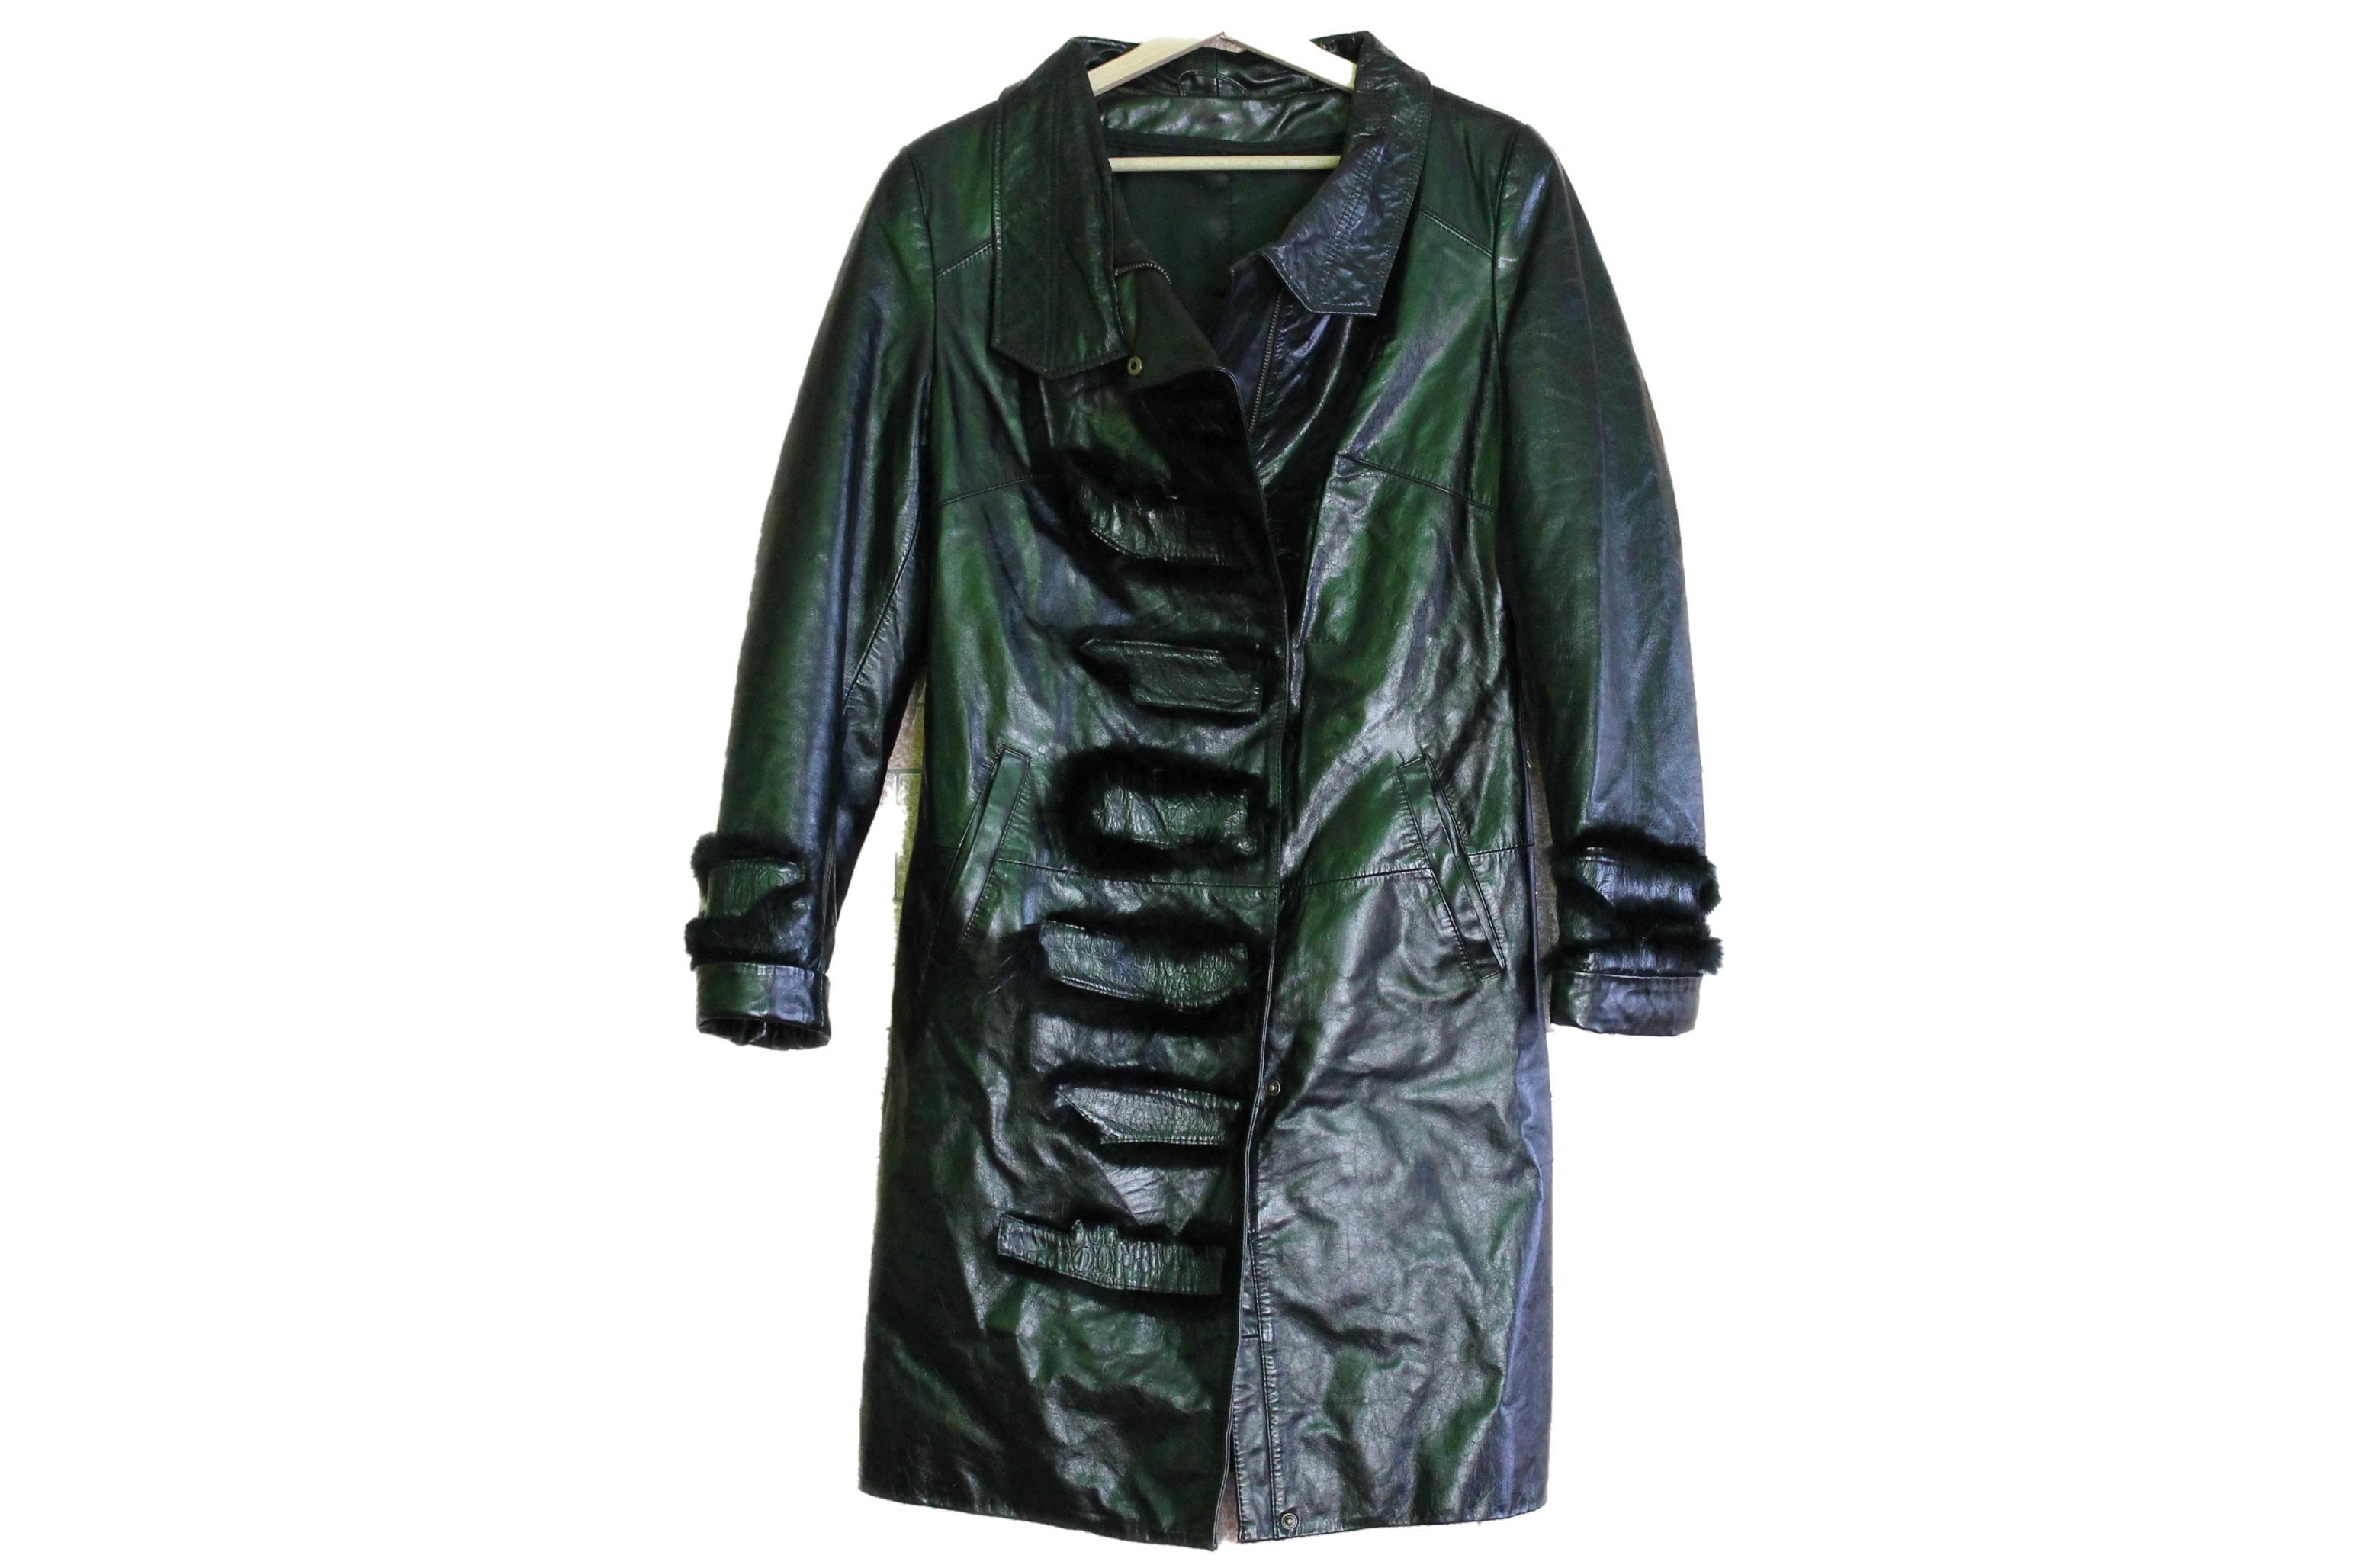 leather coat size m